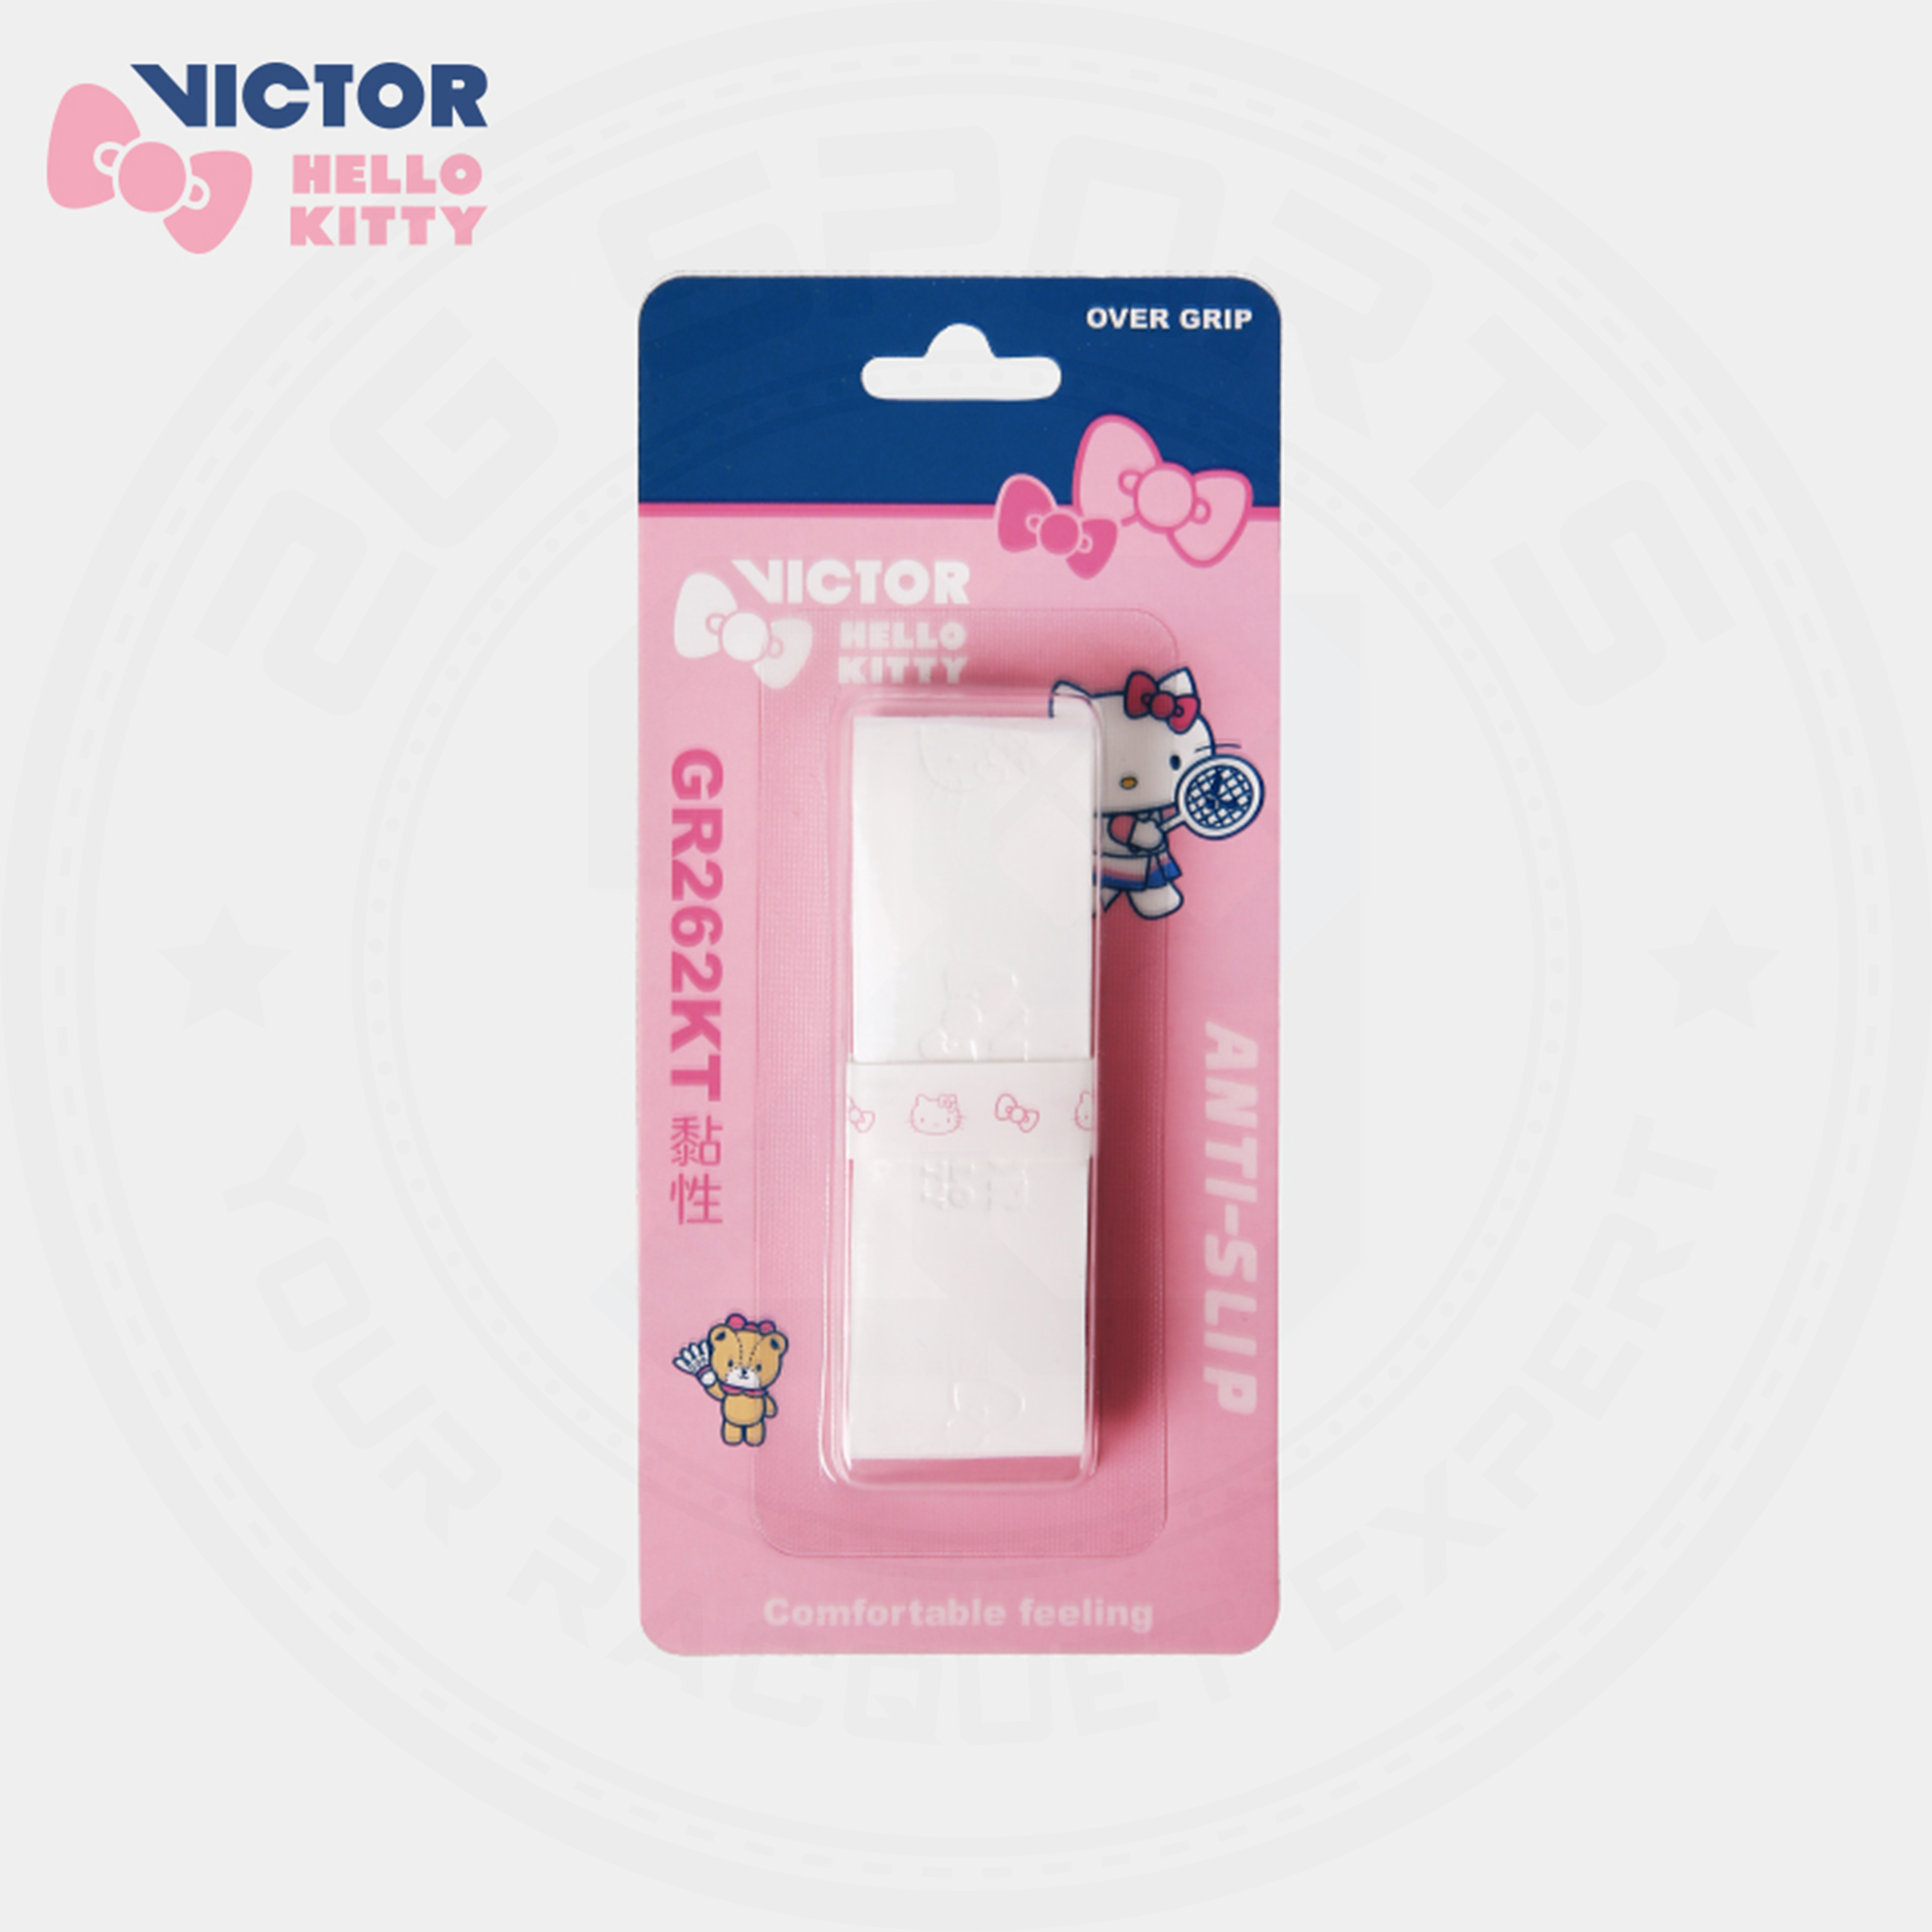 Victor X Hello Kitty GR262KT Grip